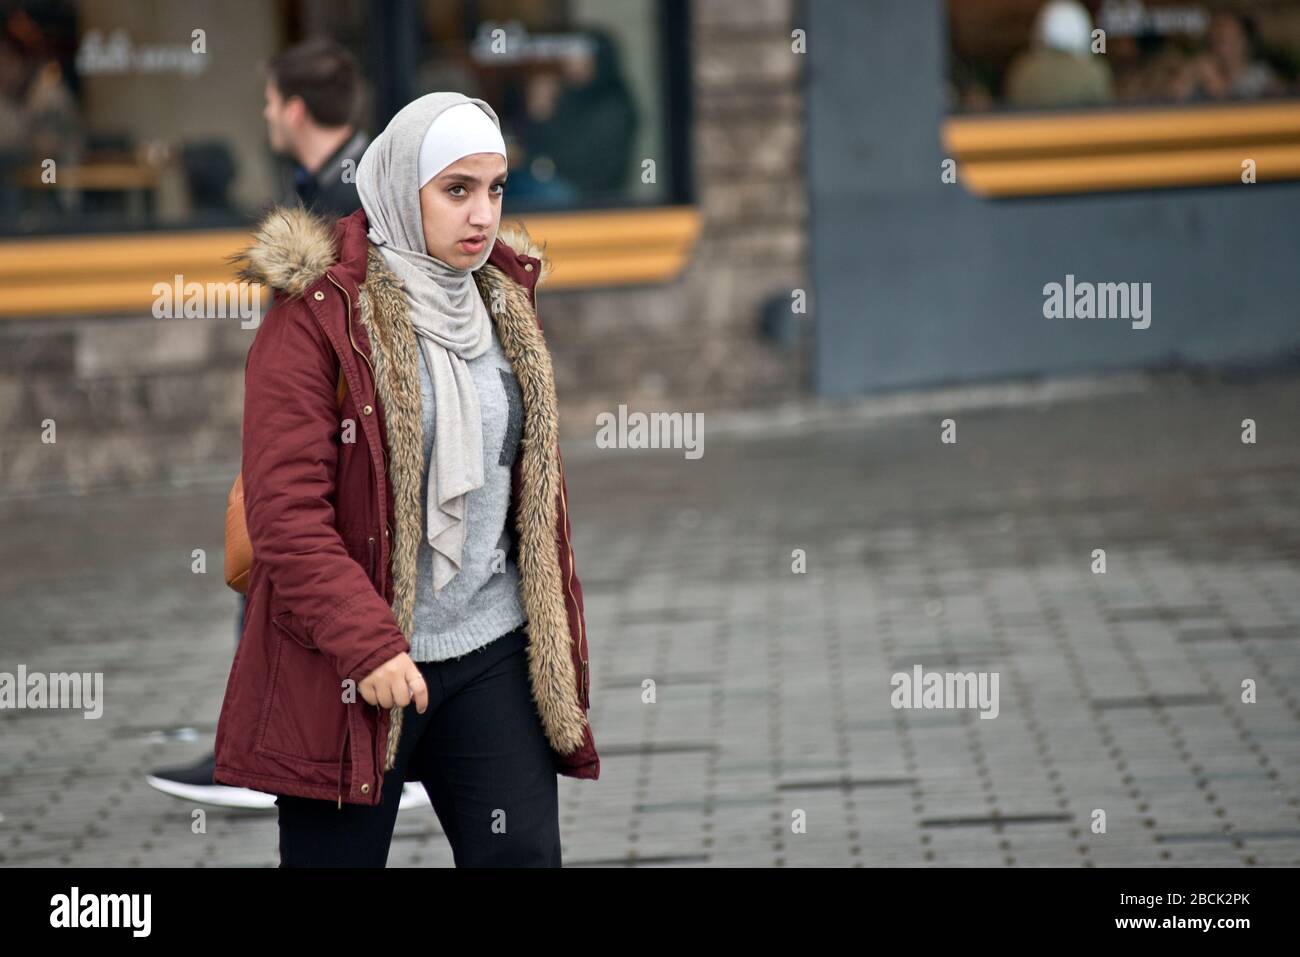 Une fille musulmane portant un pashmina et un manteau d'hiver. Place Taksim, Istanbul. Turquie Banque D'Images